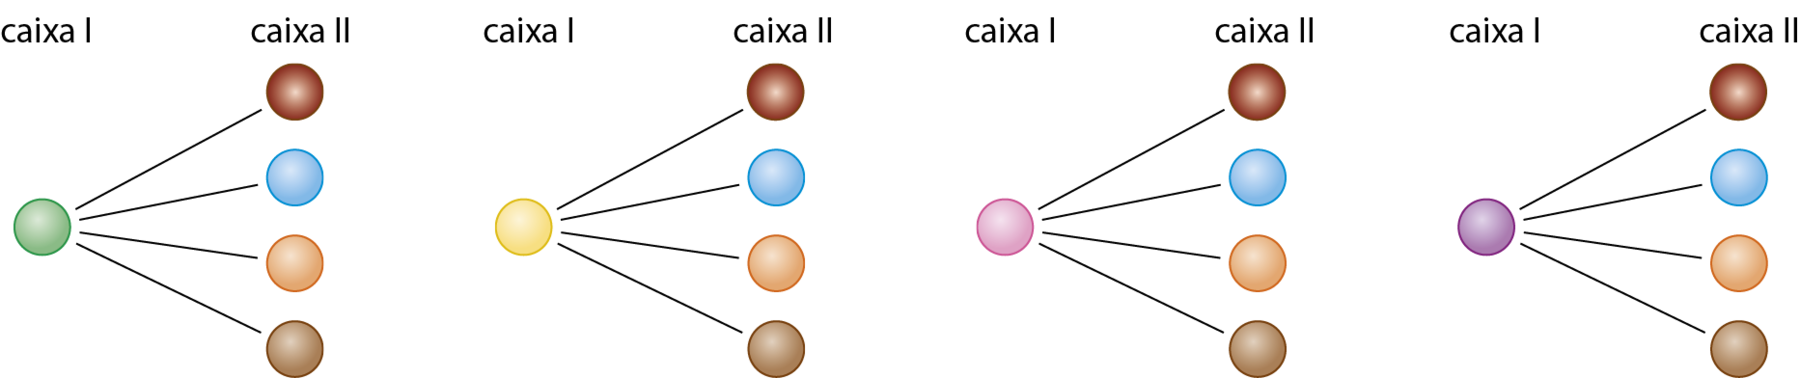 Esquema. 4 esquemas de possibilidades de pares com bolas das caixas 1 e 2, representado da esquerda para a direita. O primeiro esquema possui a bola verde da caixa 1 no centro e fio preto conectado às bolas da caixa 2, nas cores  vermelho, azul, laranja e marrom, de cima para baixo. O segundo esquema possui a bola amarela da caixa 1 no centro e fio preto conectado às bolas da caixa 2, nas cores  vermelho, azul, laranja e marrom, de cima para baixo. O terceiro esquema possui a bola rosa da caixa 1 no centro e fio preto conectado às bolas da caixa 2, nas cores  vermelho, azul, laranja e marrom, de cima para baixo. O quarto esquema possui a bola roxa da caixa 1 no centro e fio preto conectado às bolas da caixa 2, nas cores  vermelho, azul, laranja e marrom, de cima para baixo.